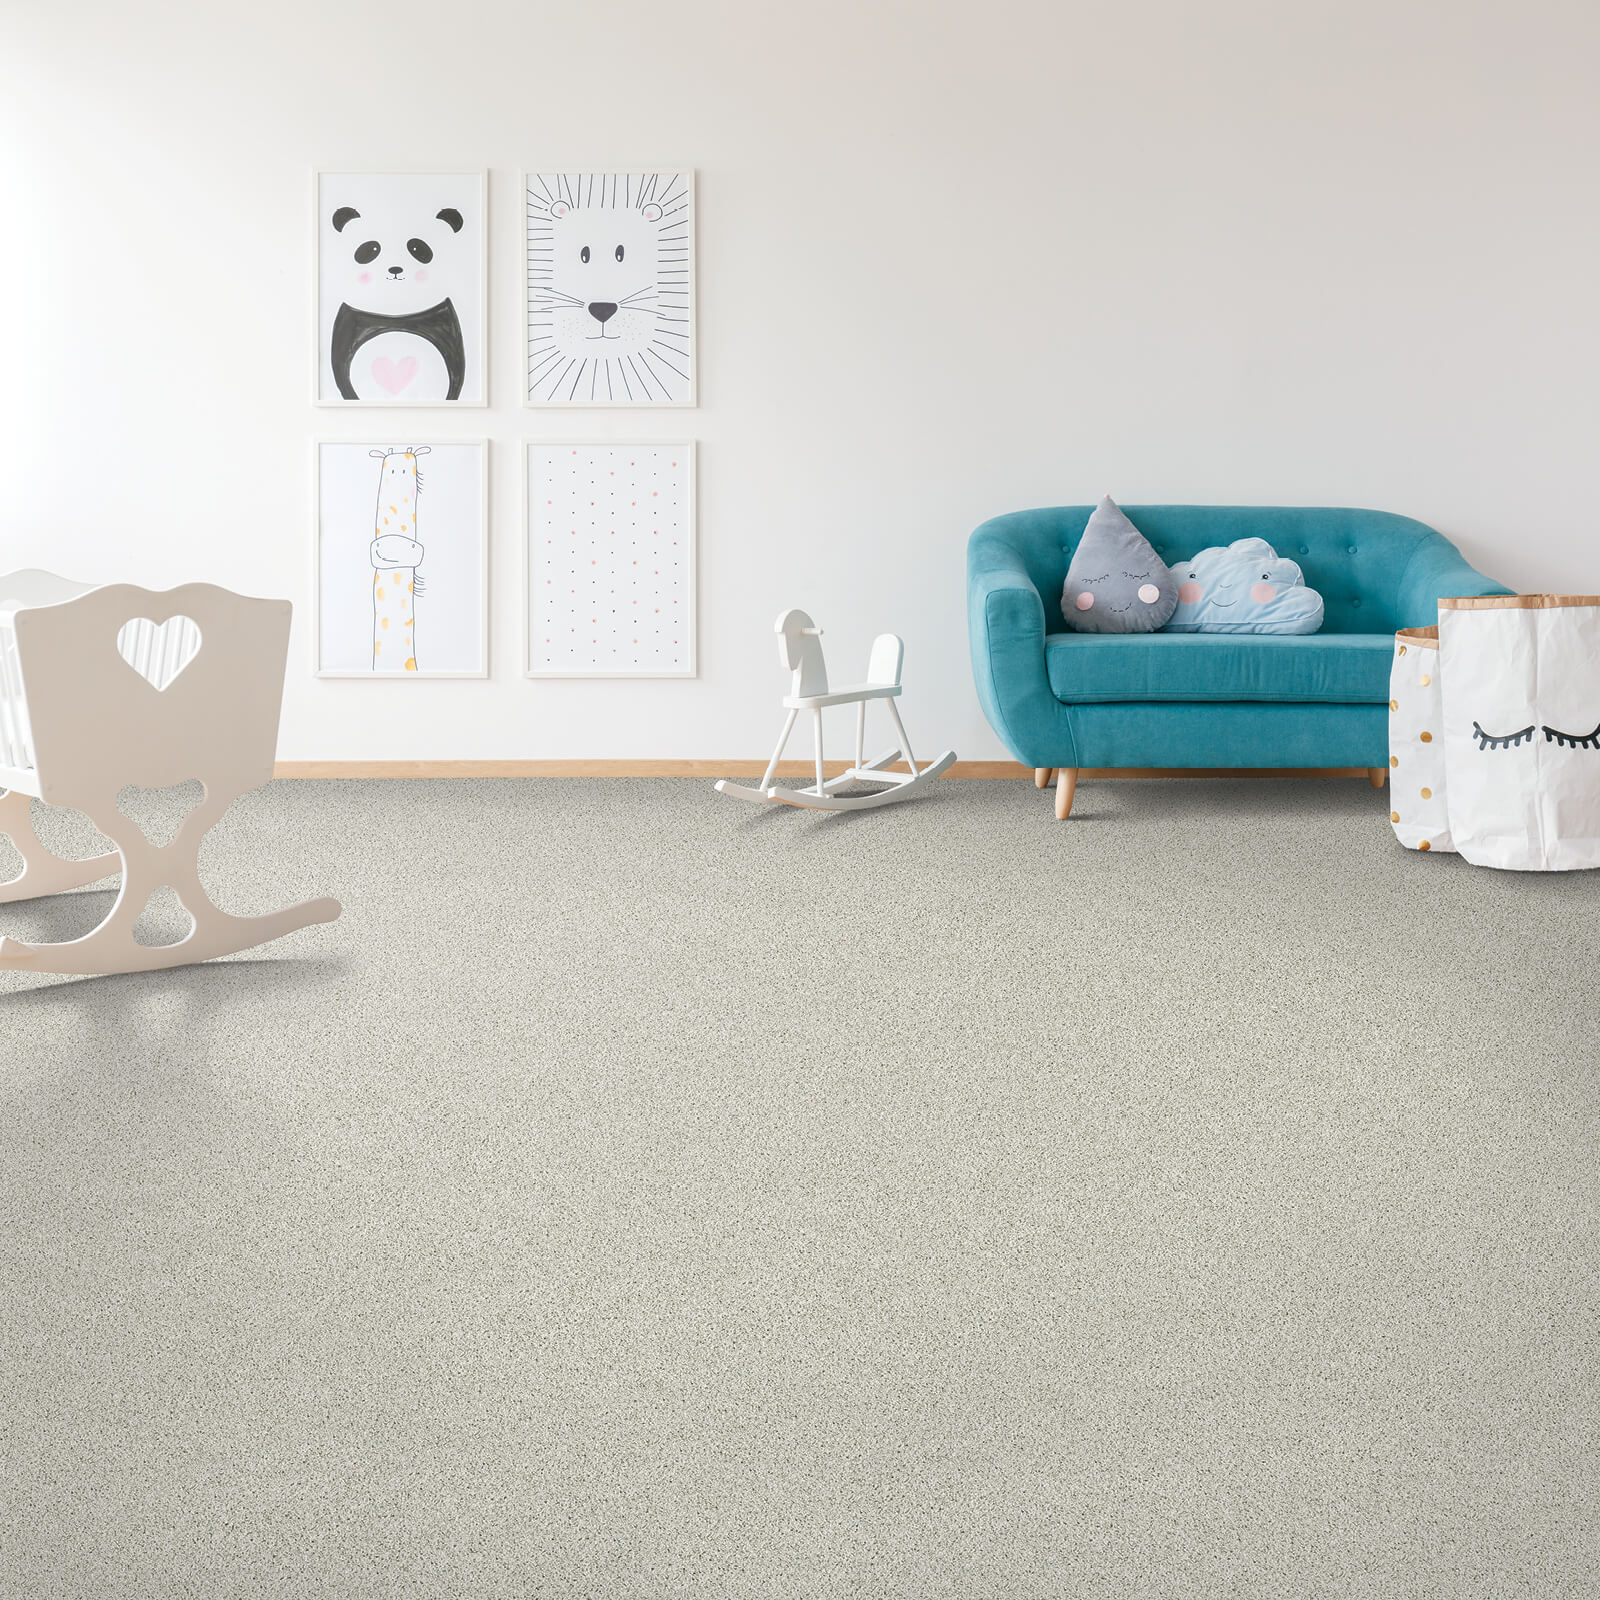 Carpet In Trendy Room | Location Carpet